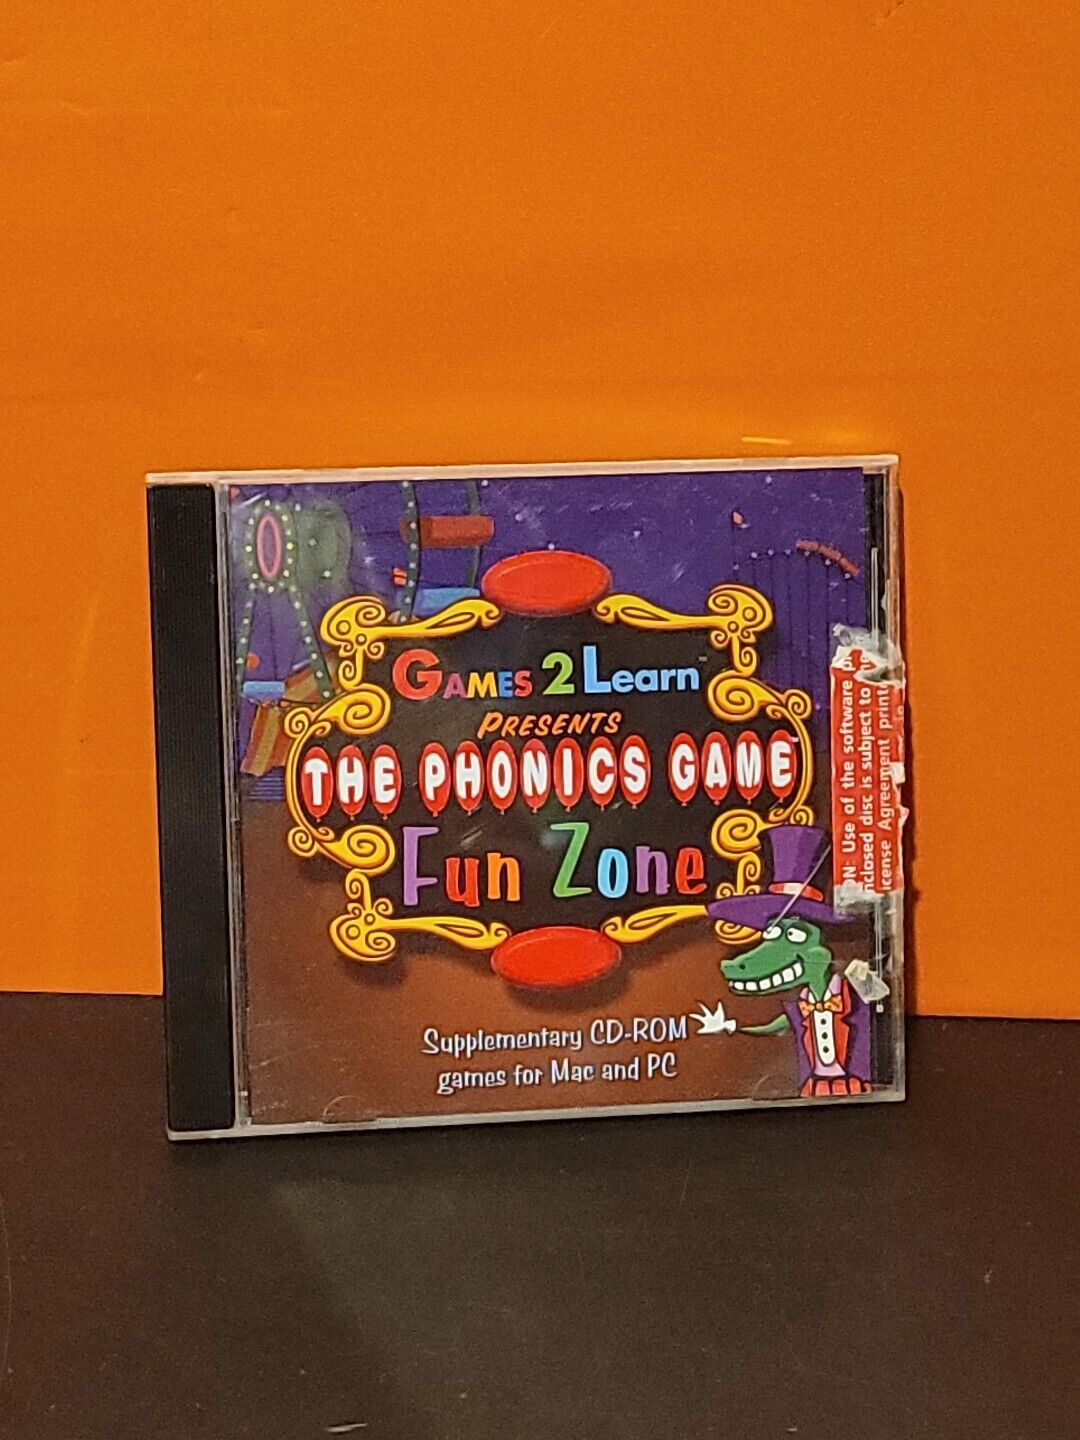 The Phonics Game: Fun Zone (Windows PC MAC CD, 1998)